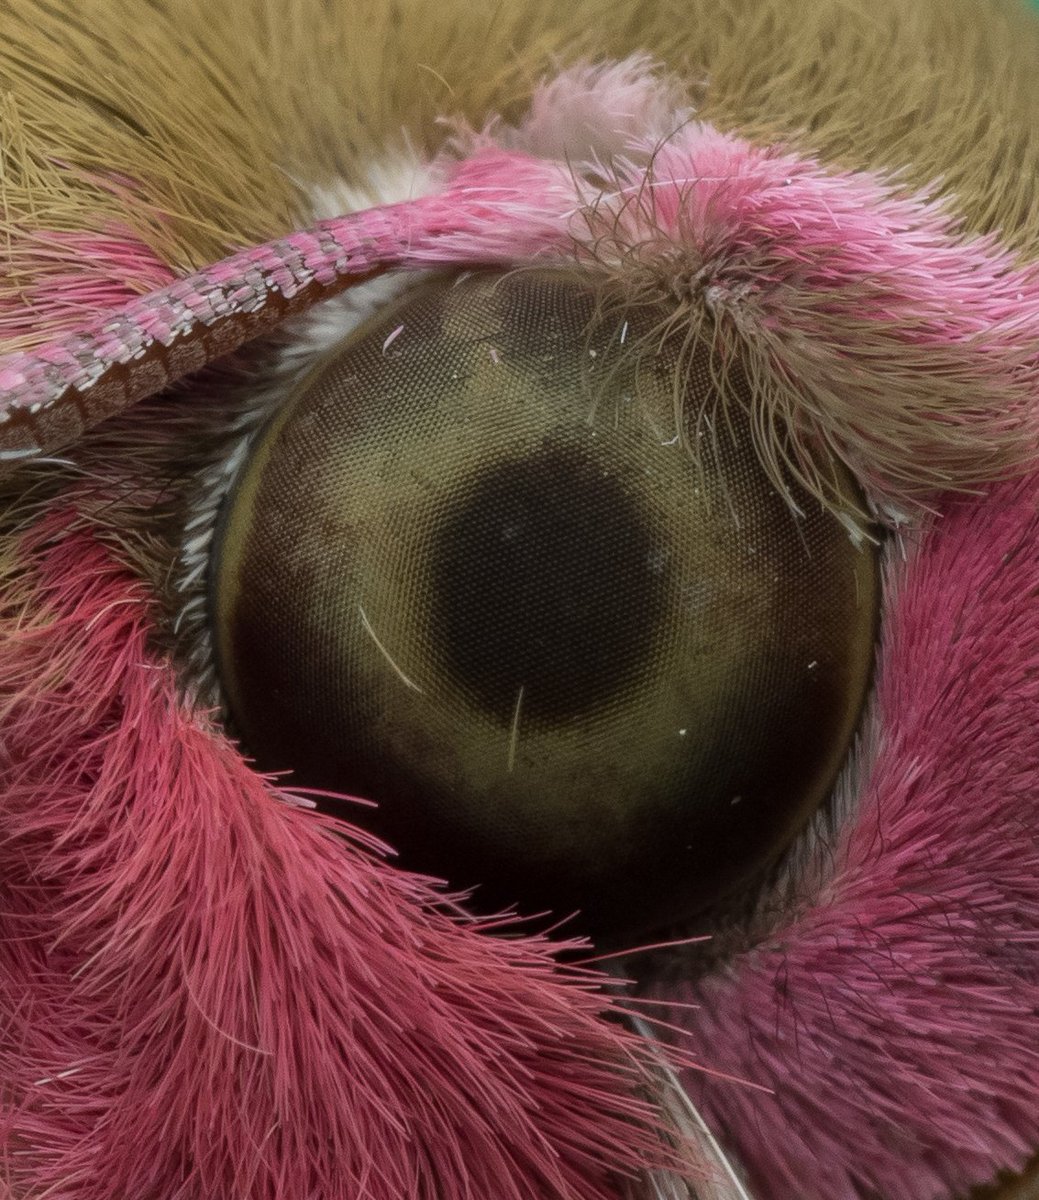 Elephant hawk-moth eye close up! @savebutterflies #mothsmatter #moths #BigButterflyCount #springwatch